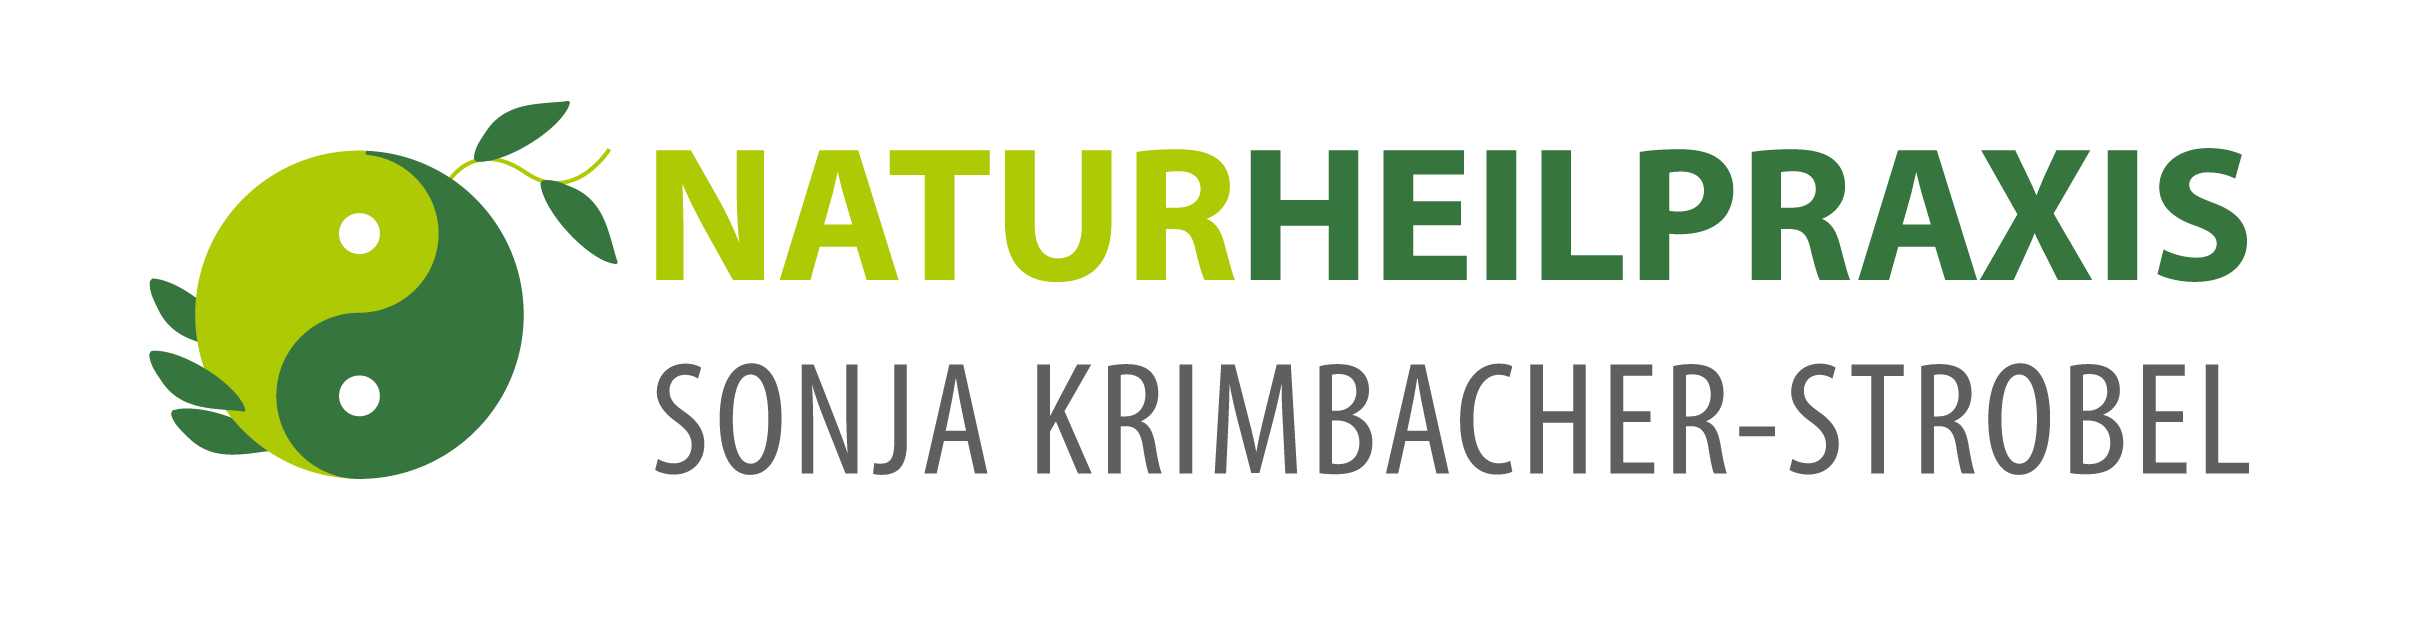 Naturheilpraxis Sonja Krimbacher-Strobel